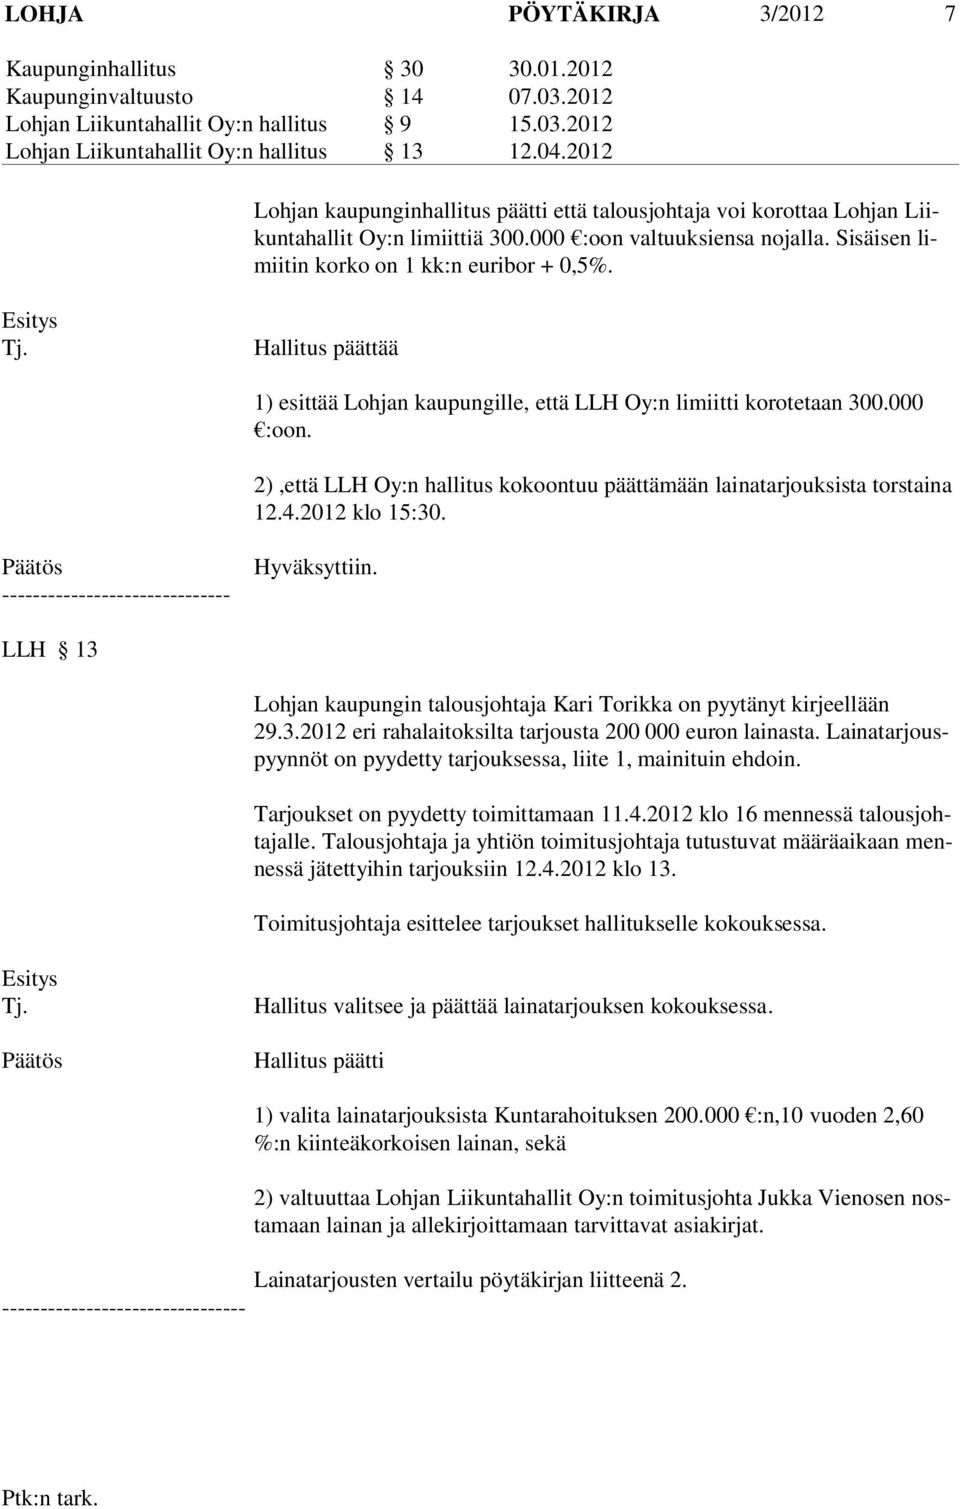 Hallitus päättää 1) esittää Lohjan kaupungille, että LLH Oy:n limiitti korotetaan 300.000 :oon. 2),että LLH Oy:n hallitus kokoontuu päättämään lainatarjouksista torstaina 12.4.2012 klo 15:30.